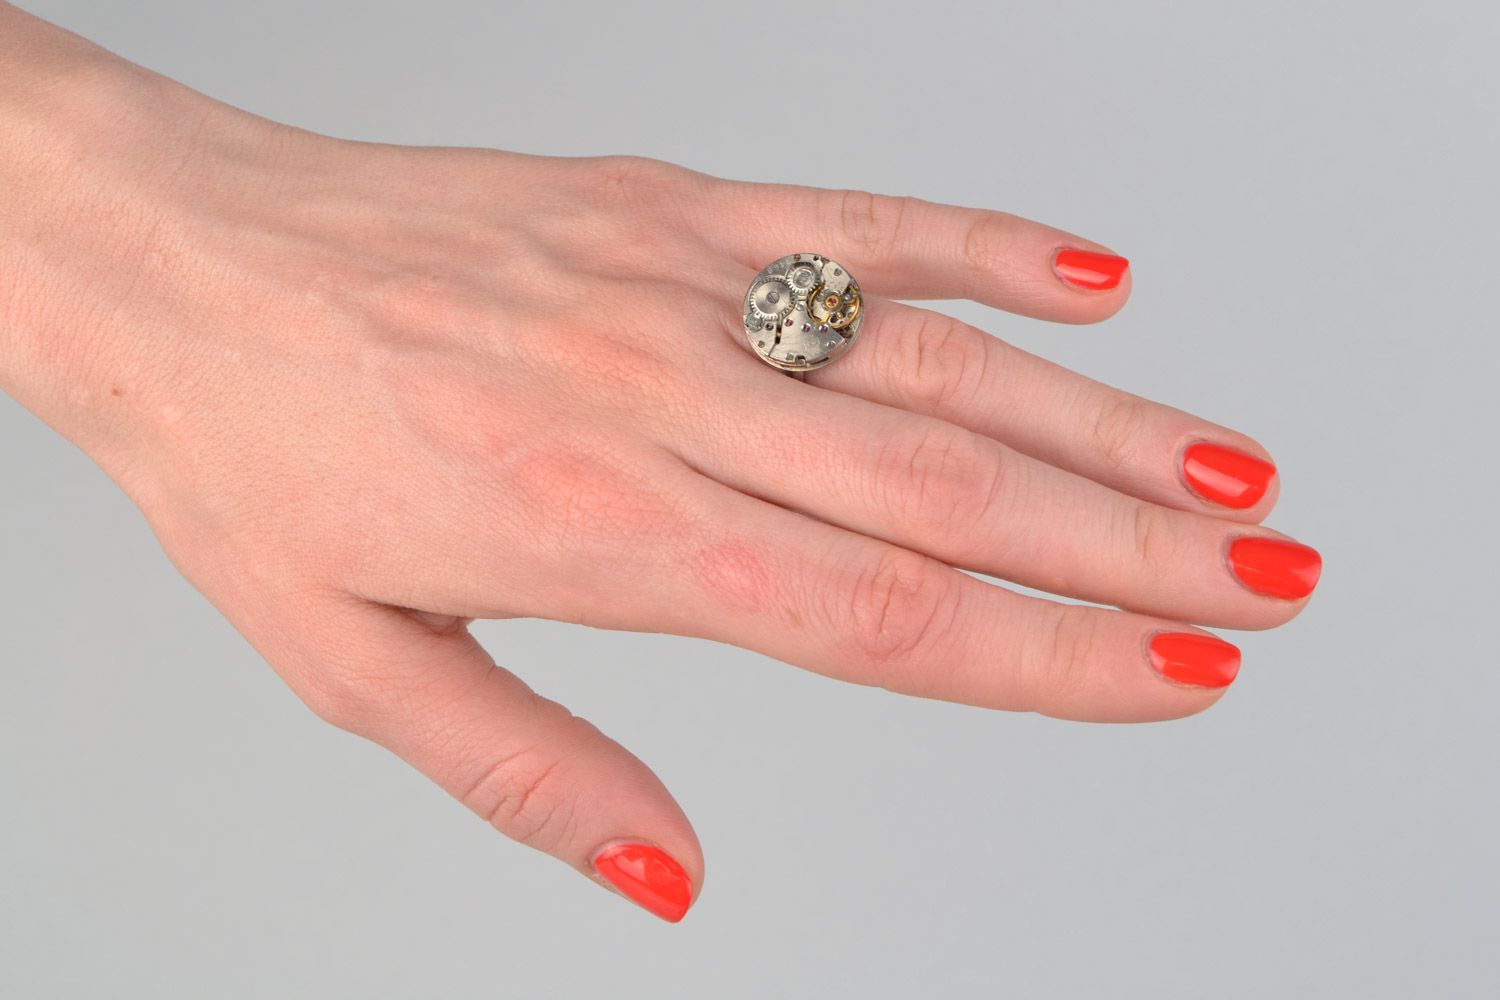 Exklusiver handmade kleiner Ring mit Uhrwerk im Steampunk Stil für stilvollen Look foto 2